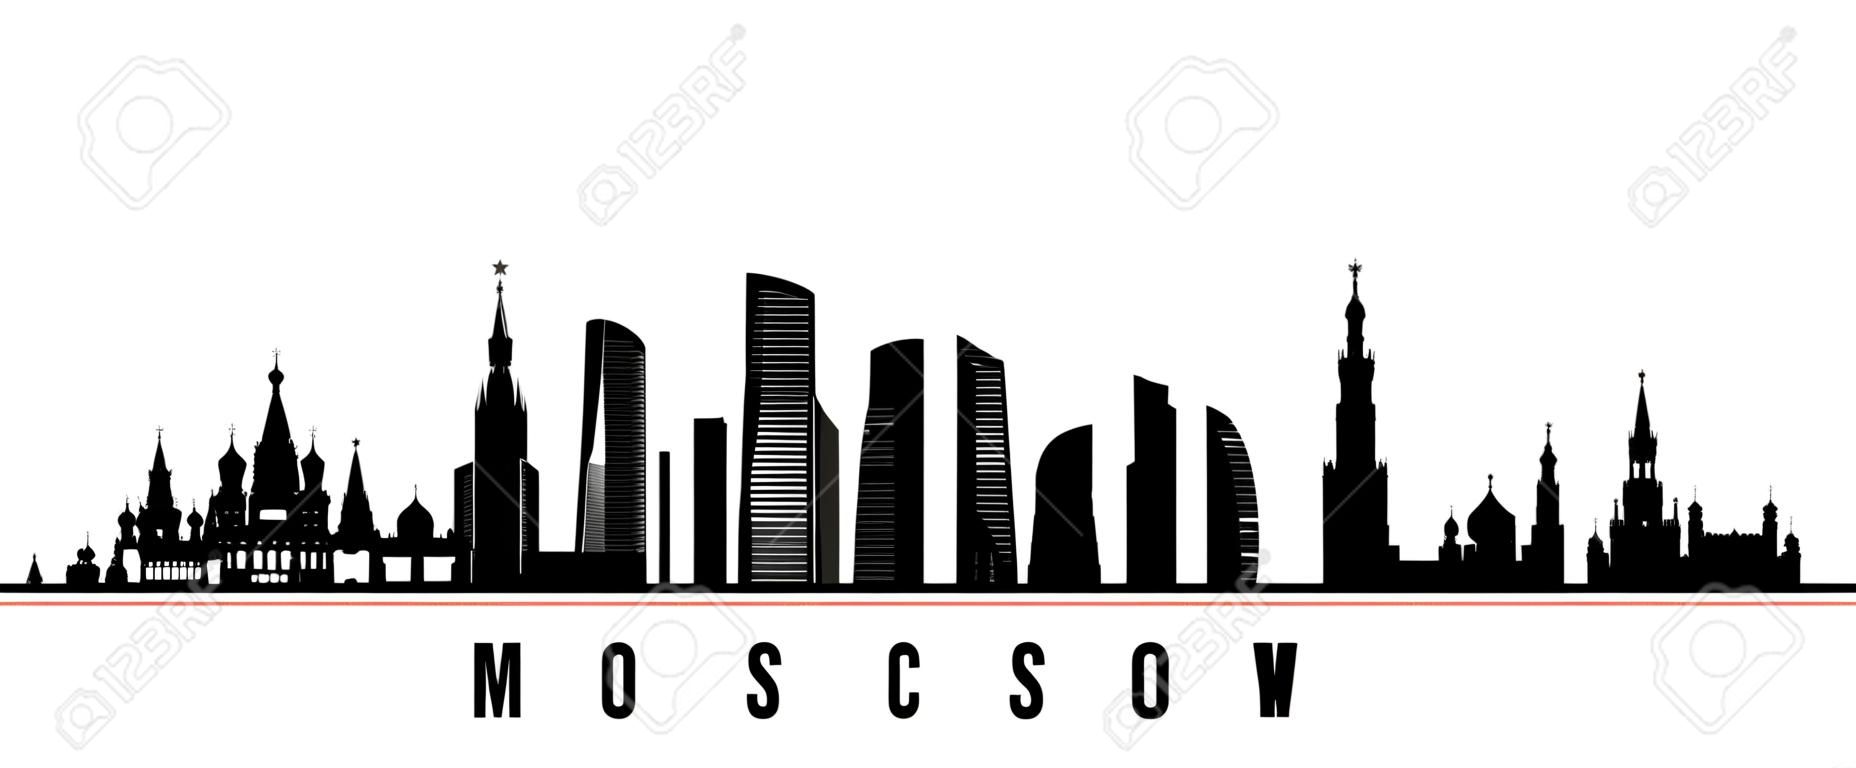 Banner horizontal del horizonte de la ciudad de Moscú. Silueta en blanco y negro de la ciudad de Moscú, Rusia. Plantilla de vector para su diseño.